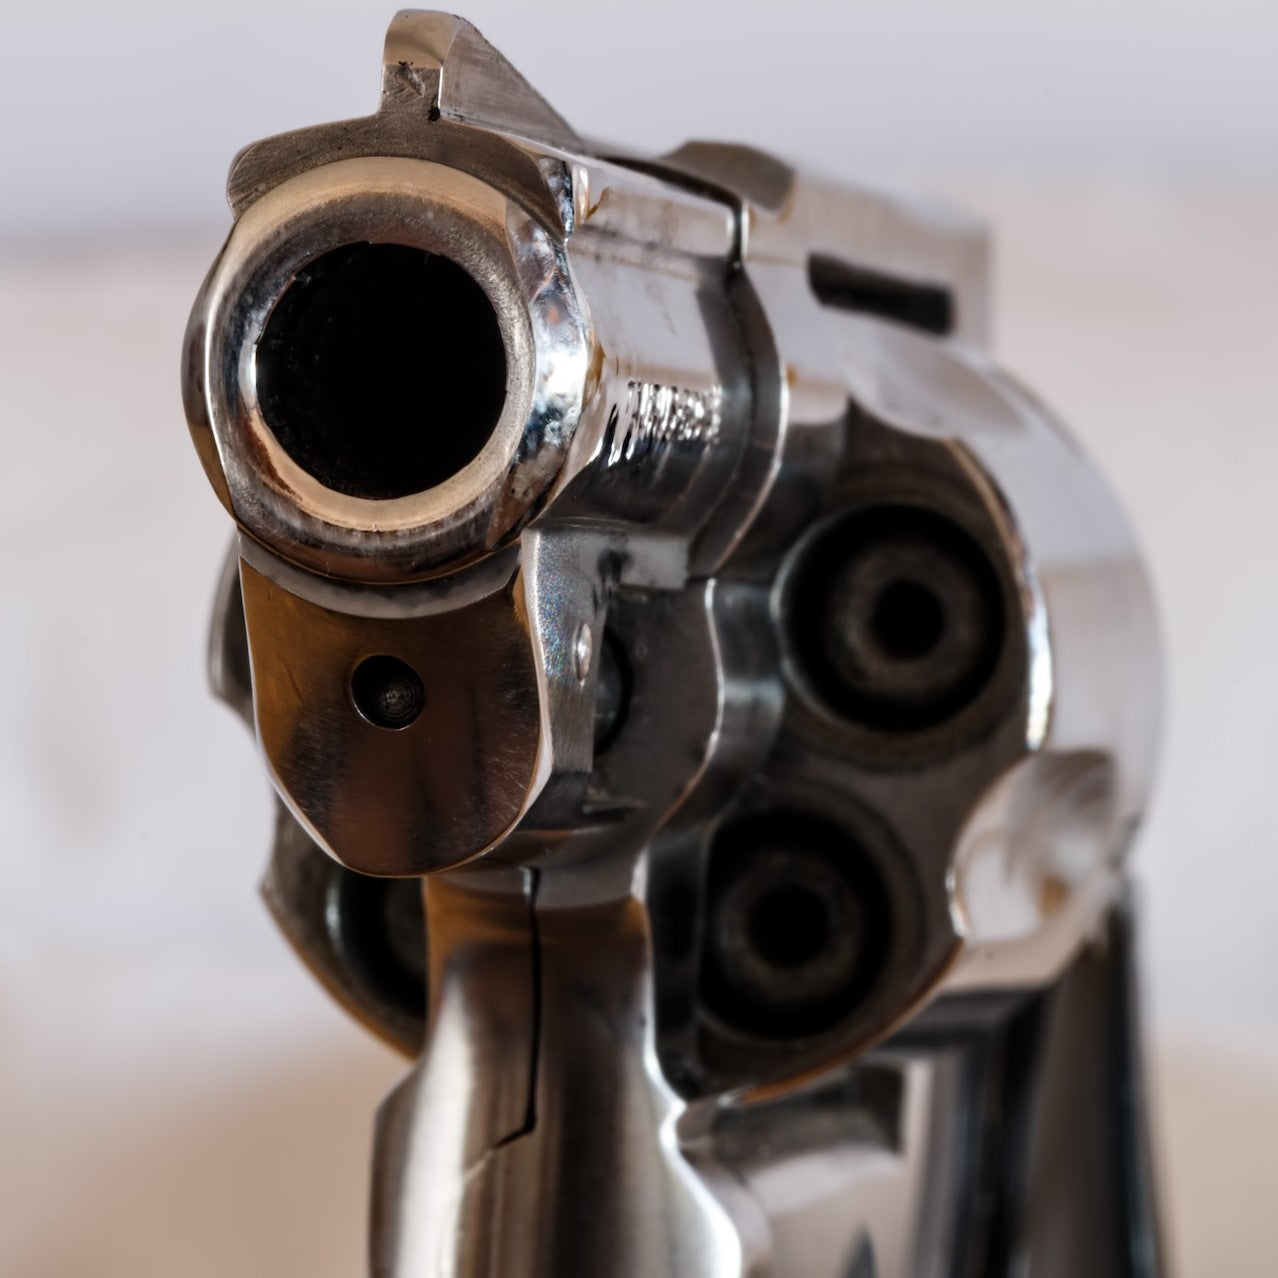 Blick in den Lauf eines Revolvers